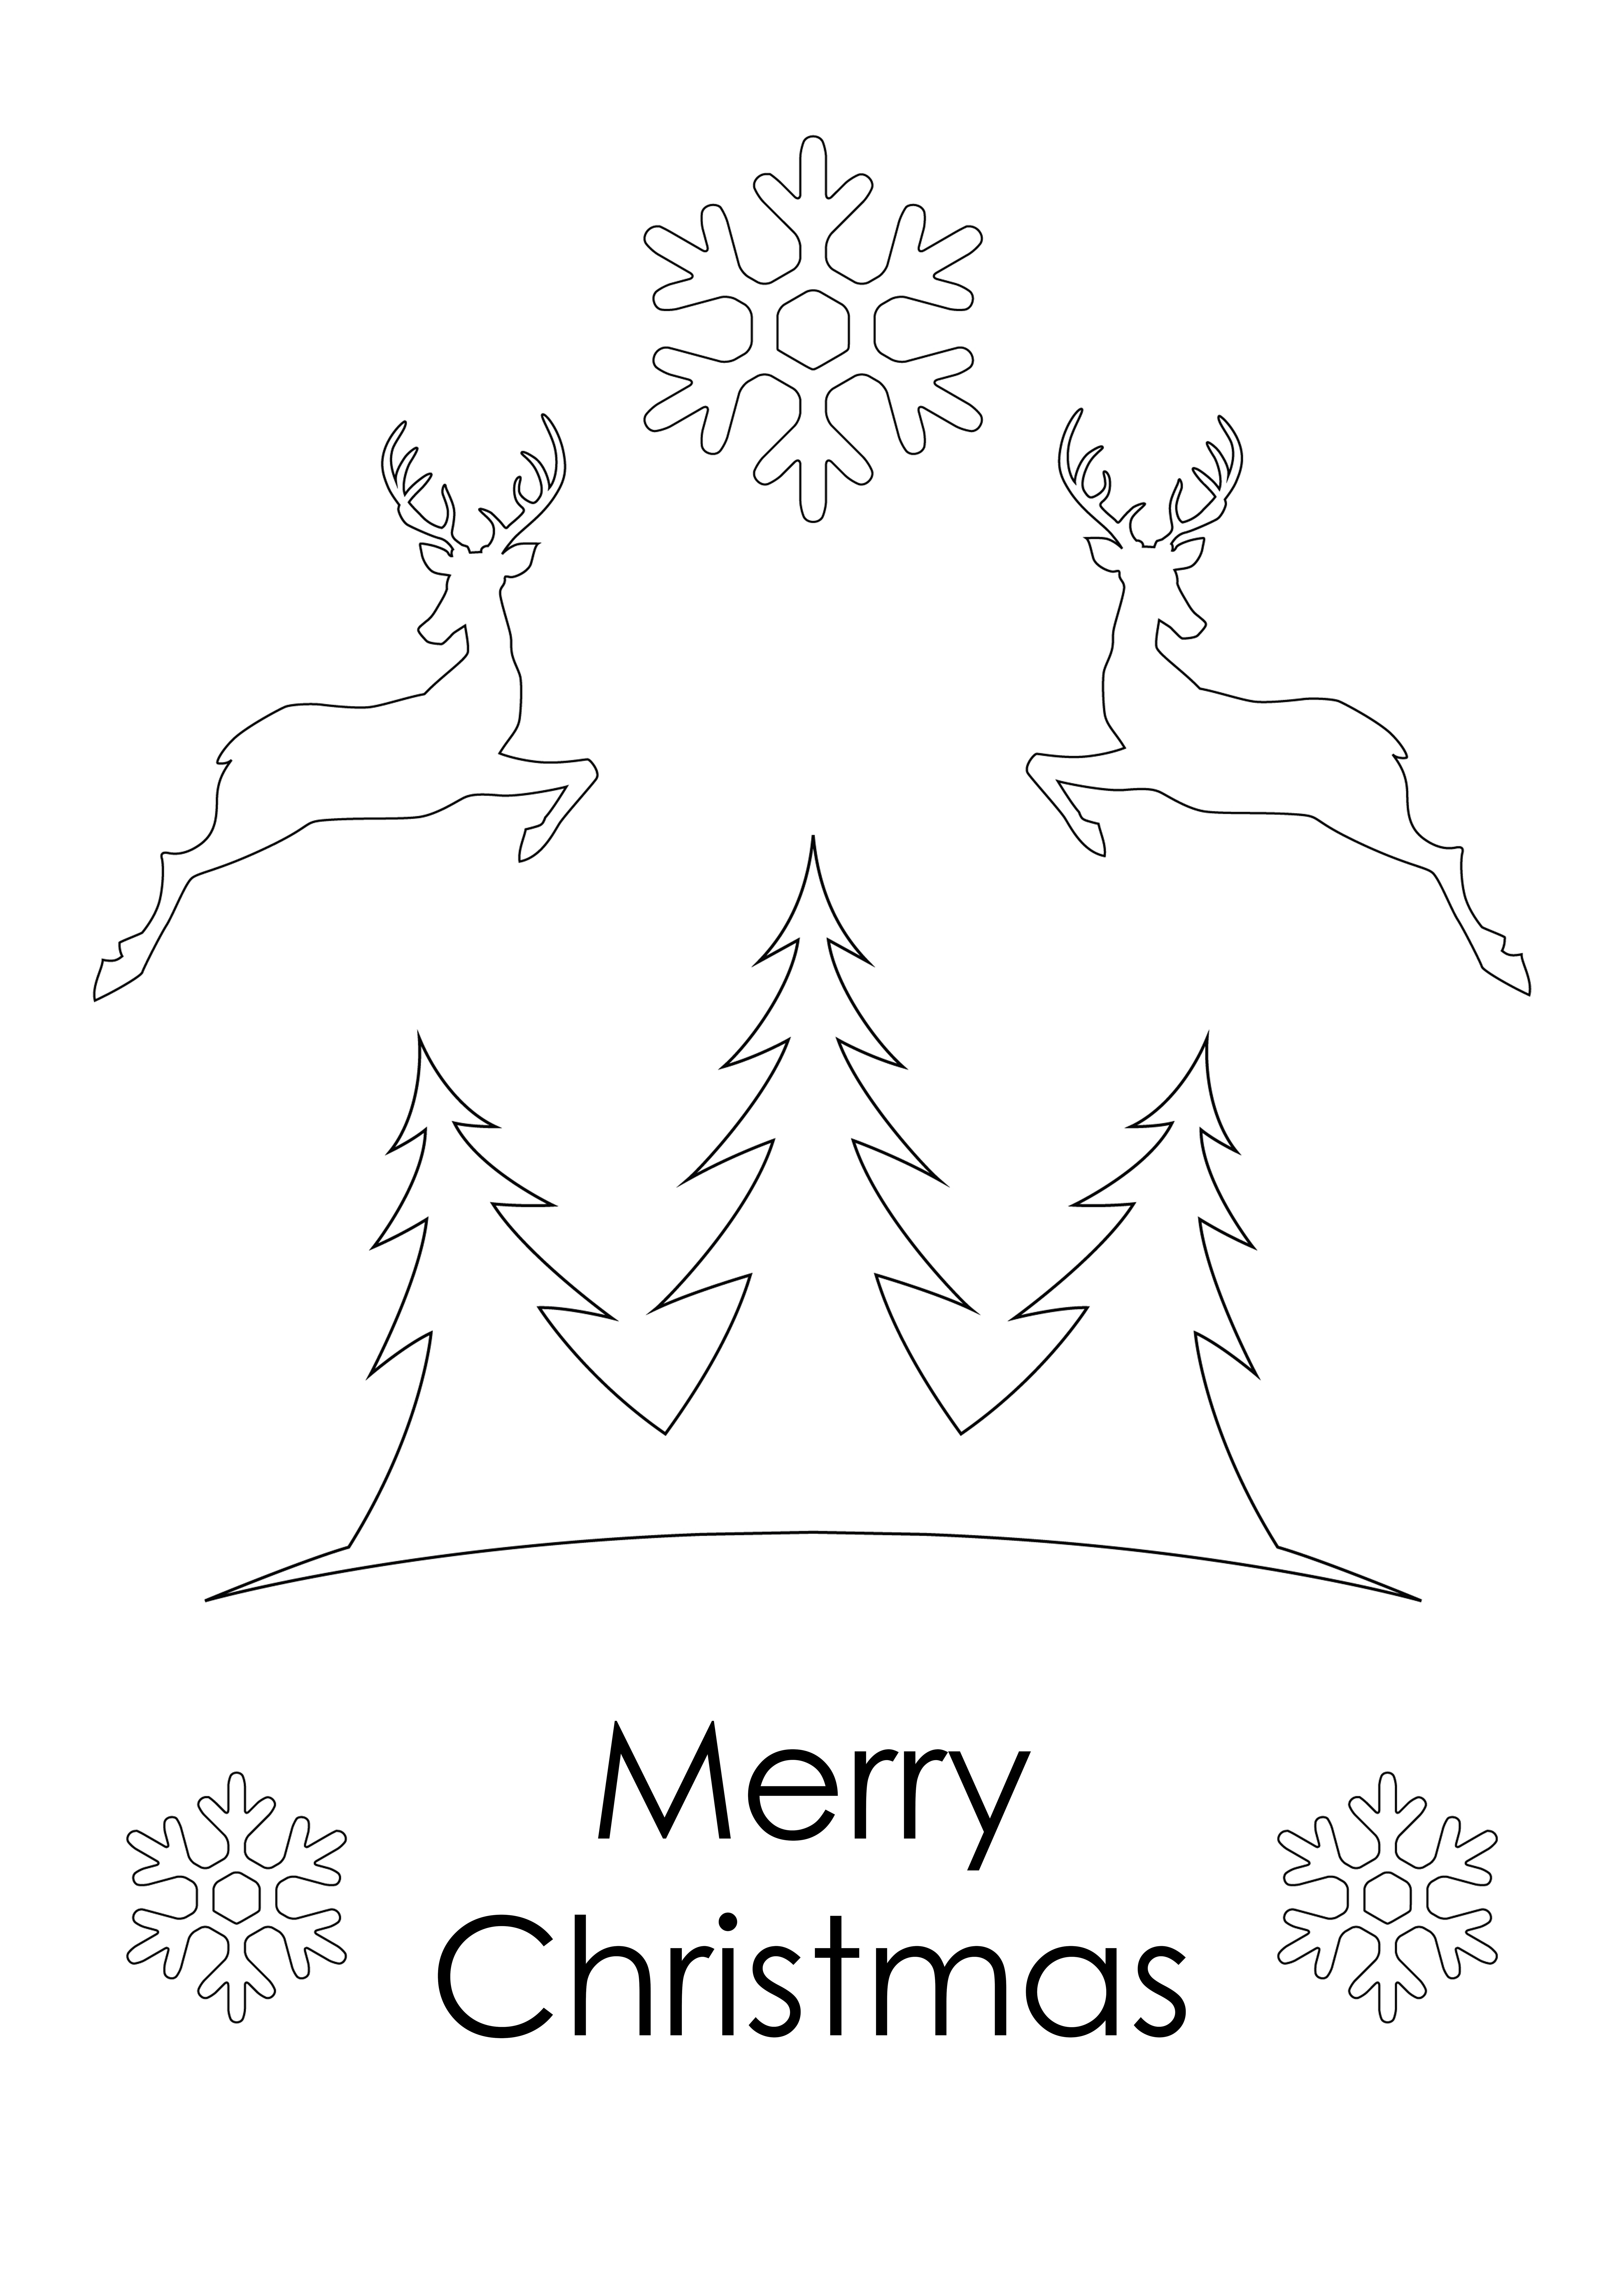 子供のための印刷と着色のための無料のメリー クリスマス カード